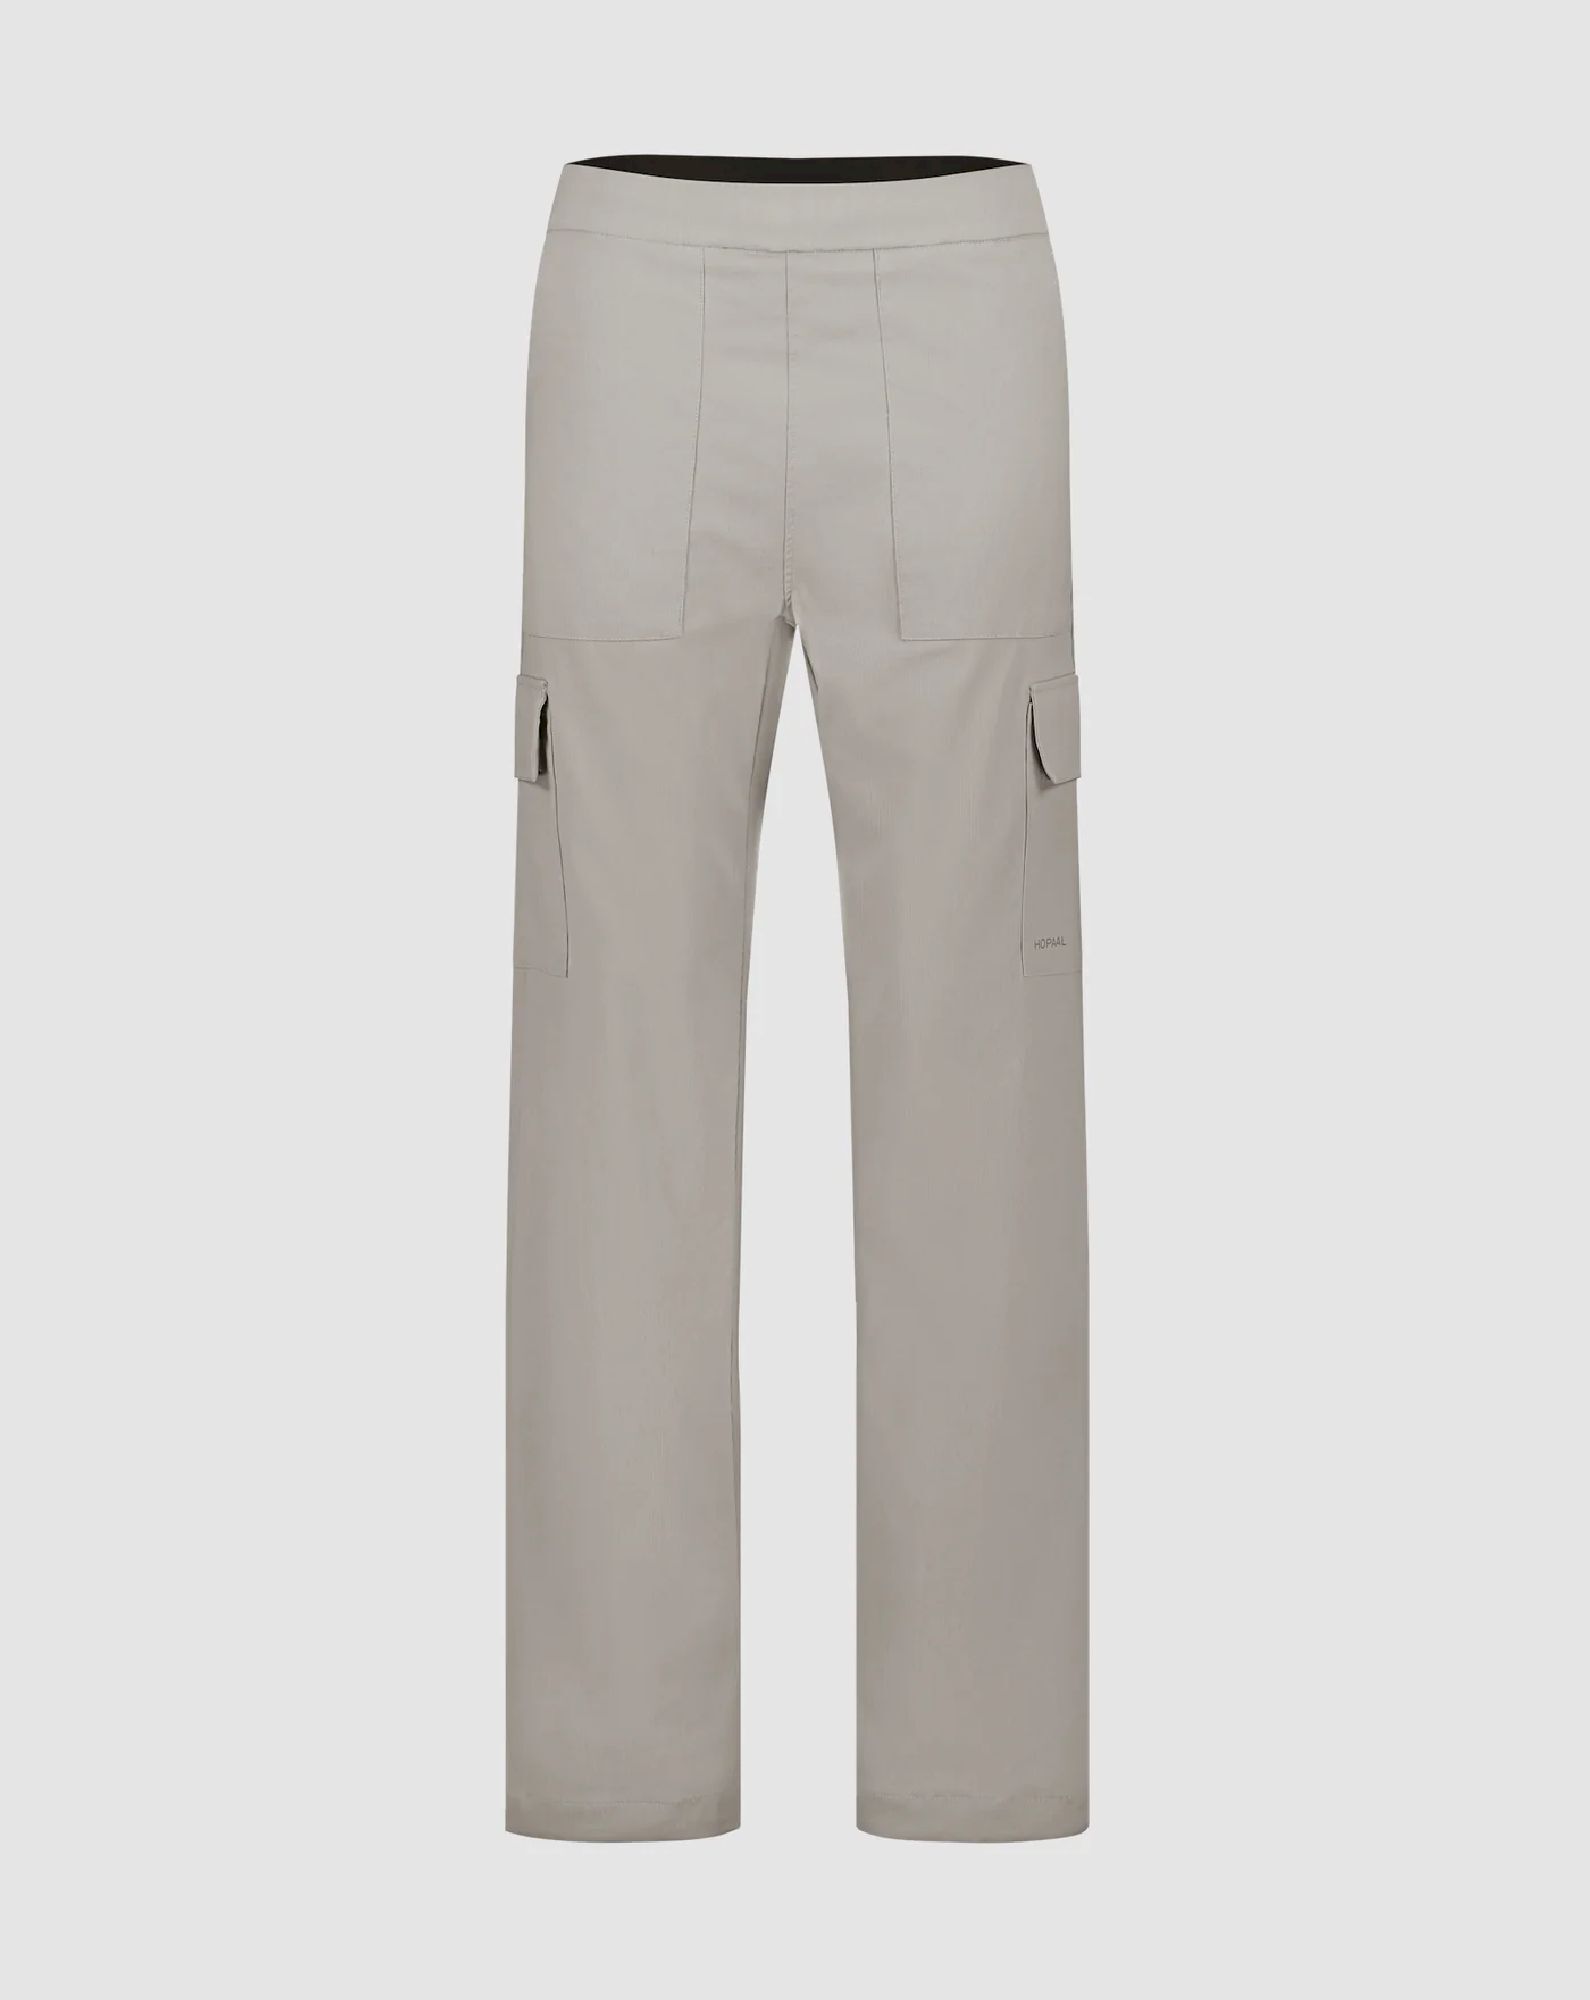 Hopaal Pantalon Multi-Activités - Dámské turistické kalhoty | Hardloop